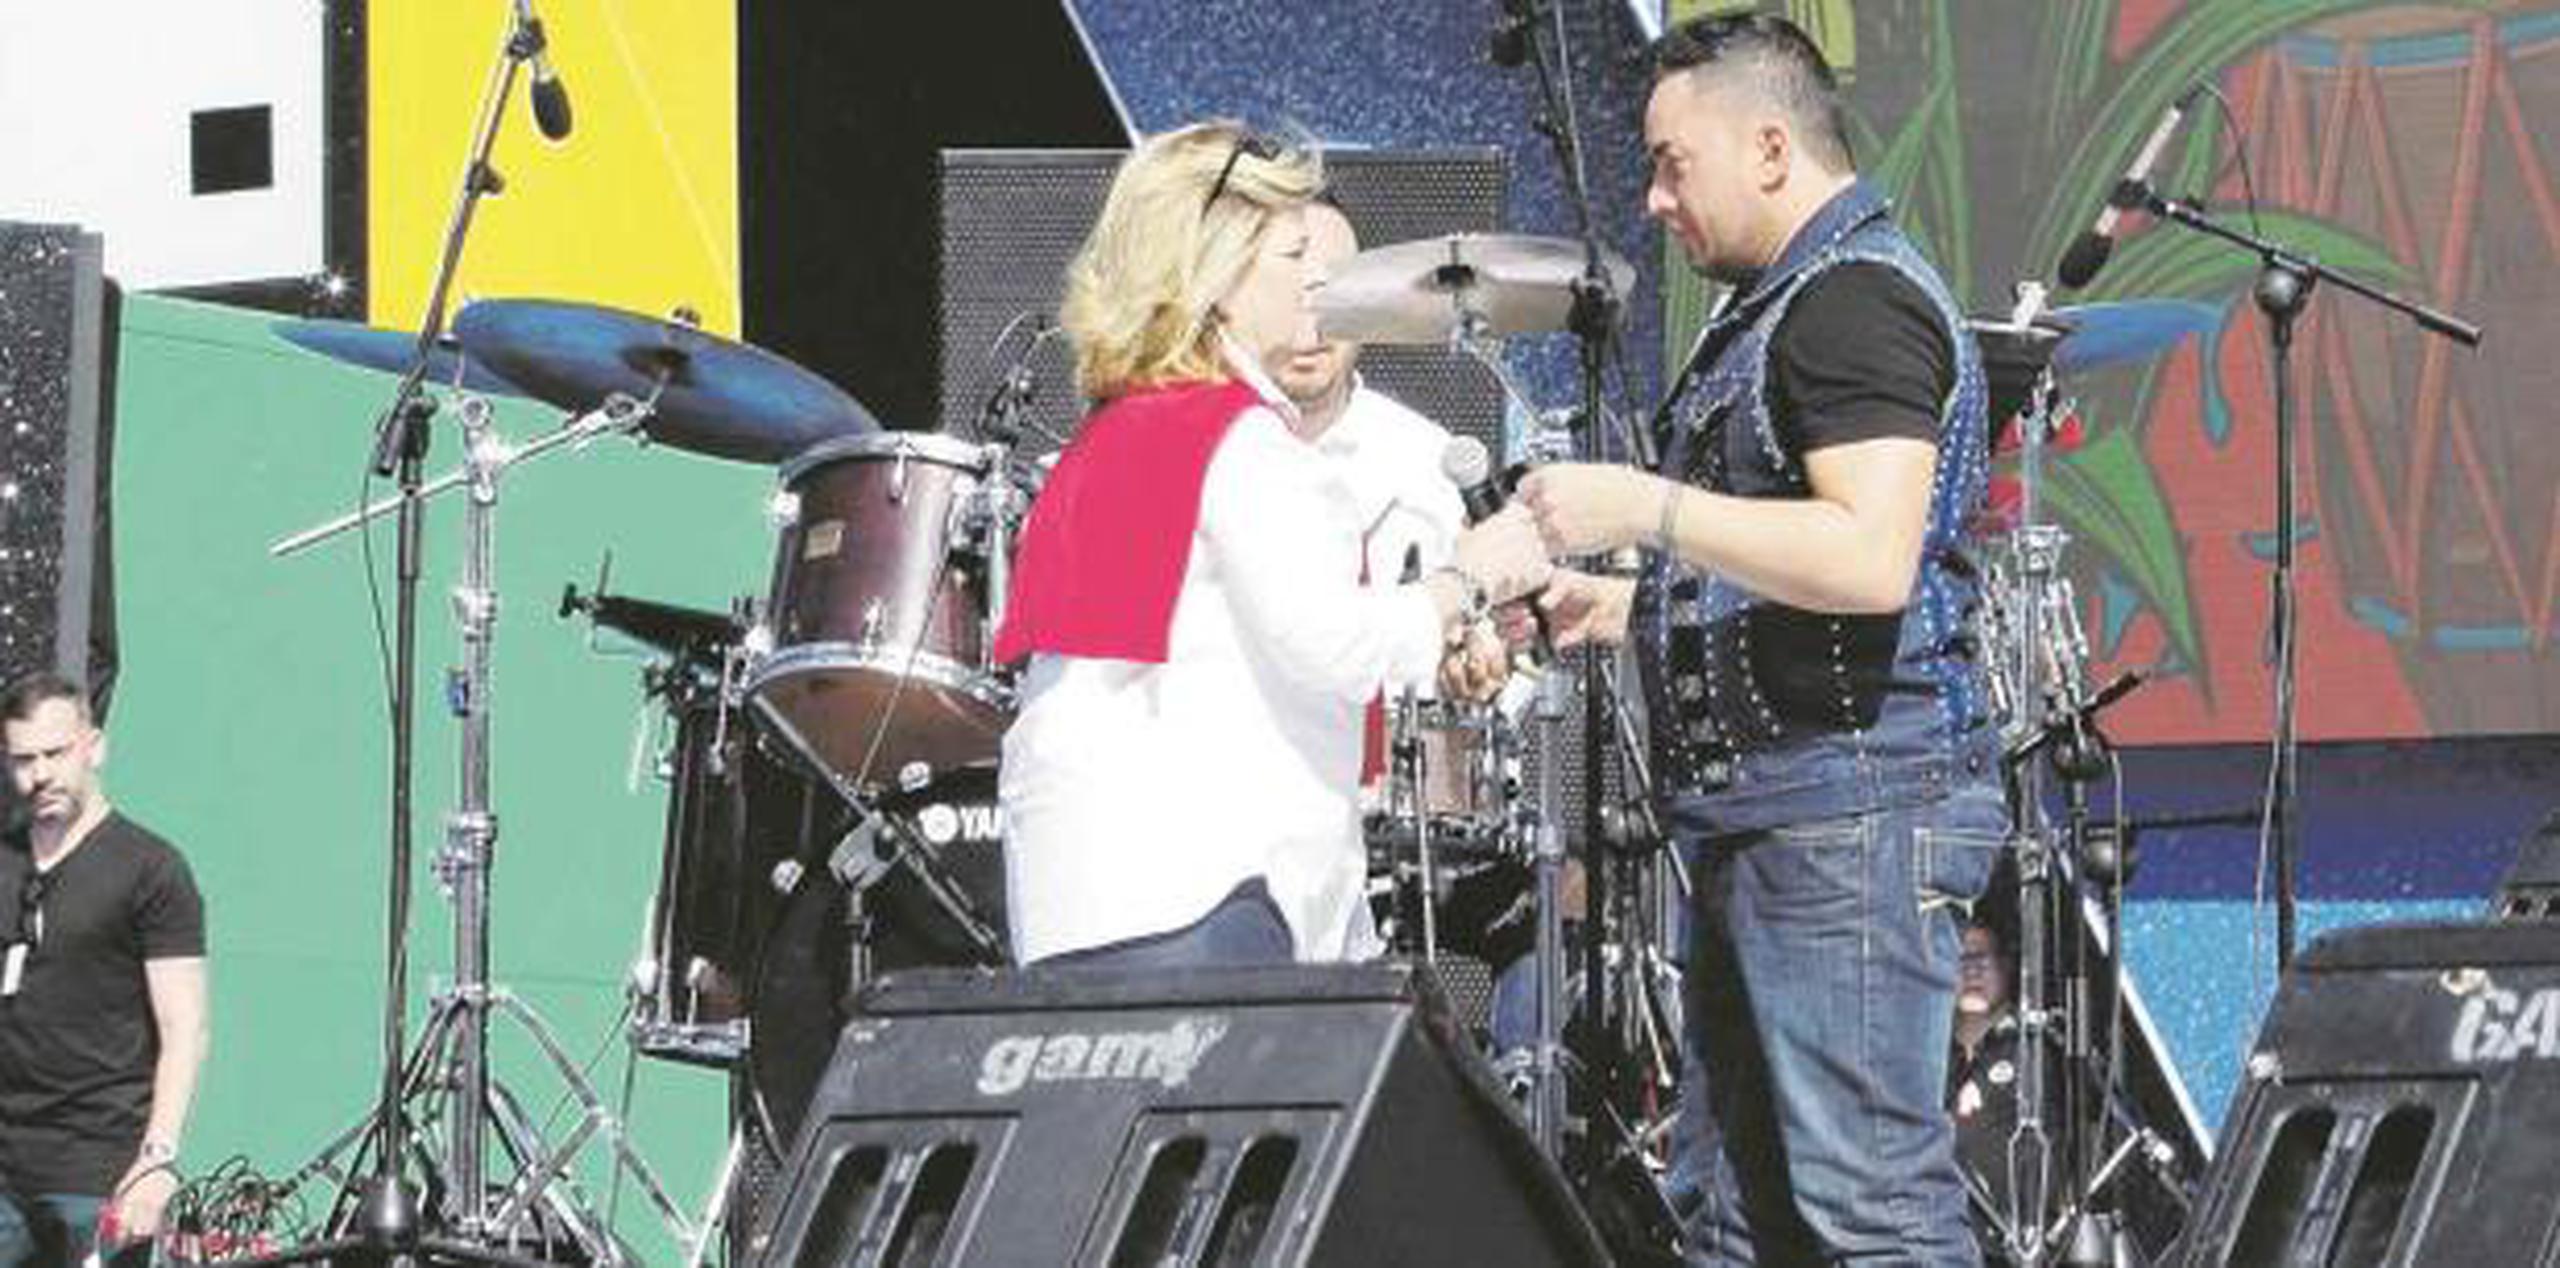 La concejala del Carnaval de Las Palmas, Inmaculada Medina, aseguró ayer que no pagará la cantidad de 30 mil euros (unos $34,000) al cantante puertorriqueño Manny Manuel “porque no actuó”.